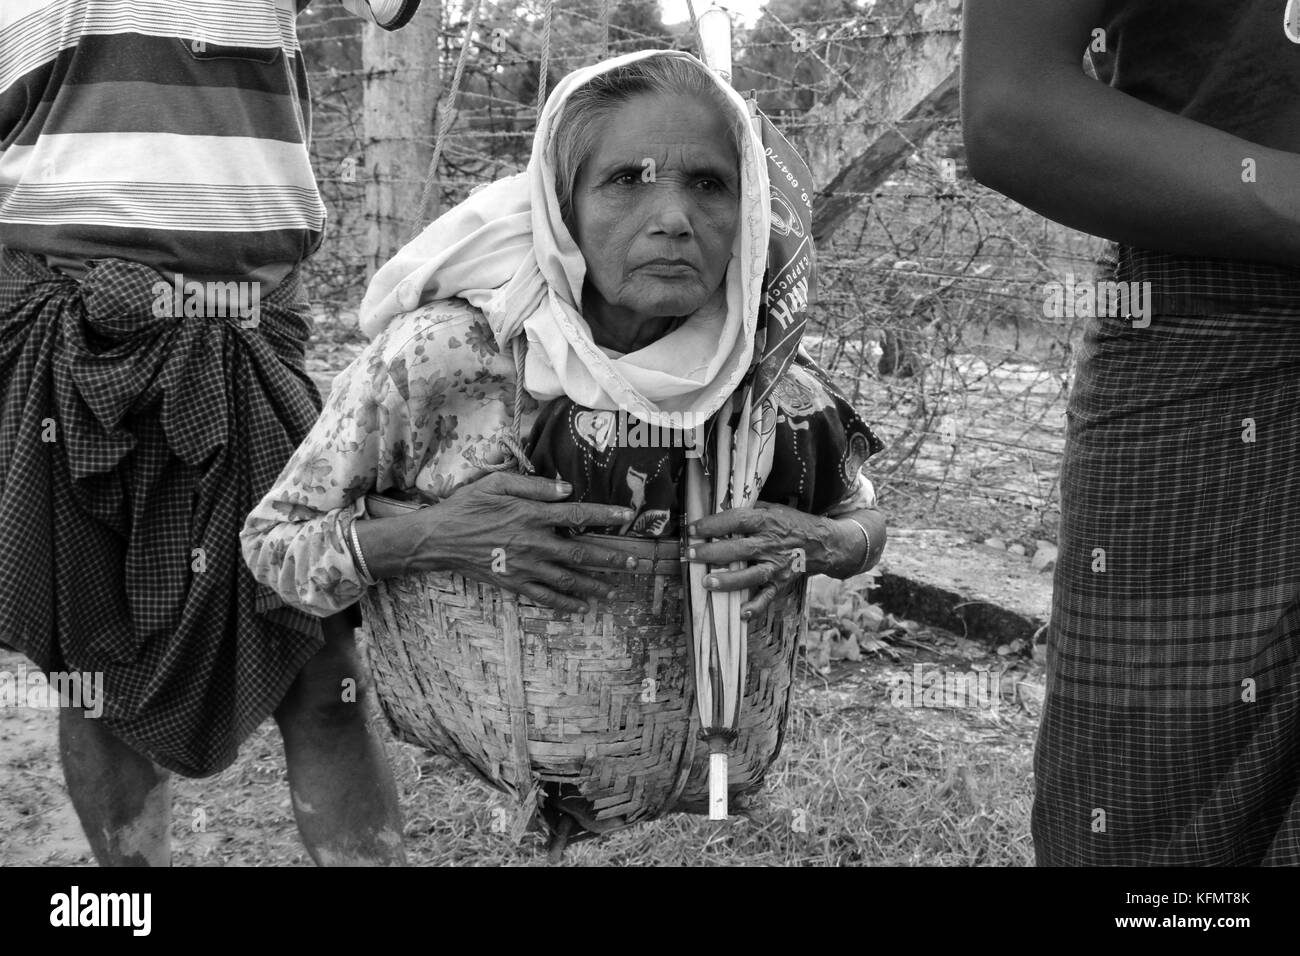 Myanmar : les réfugiés Rohingya fuyant l'opération militaire dans l'État de Rakhine au Myanmar, marcher le long de la clôture frontalière Myanmar-Bangladesh près de Maungdaw à se réfugier au Bangladesh le 7 septembre 2017. Plus d'un demi-million de réfugiés Rohingyas de l'État de Rakhine au Myanmar, ont traverse au Bangladesh depuis août 25, 2017 D'après l'ONU. La dernière campagne de l'armée du Myanmar contre les Rohingyas ont débuté après l'attaque sur plusieurs postes de police dans l'État de Rakhine. © Asad Rehman/Alamy Stock Photo Banque D'Images